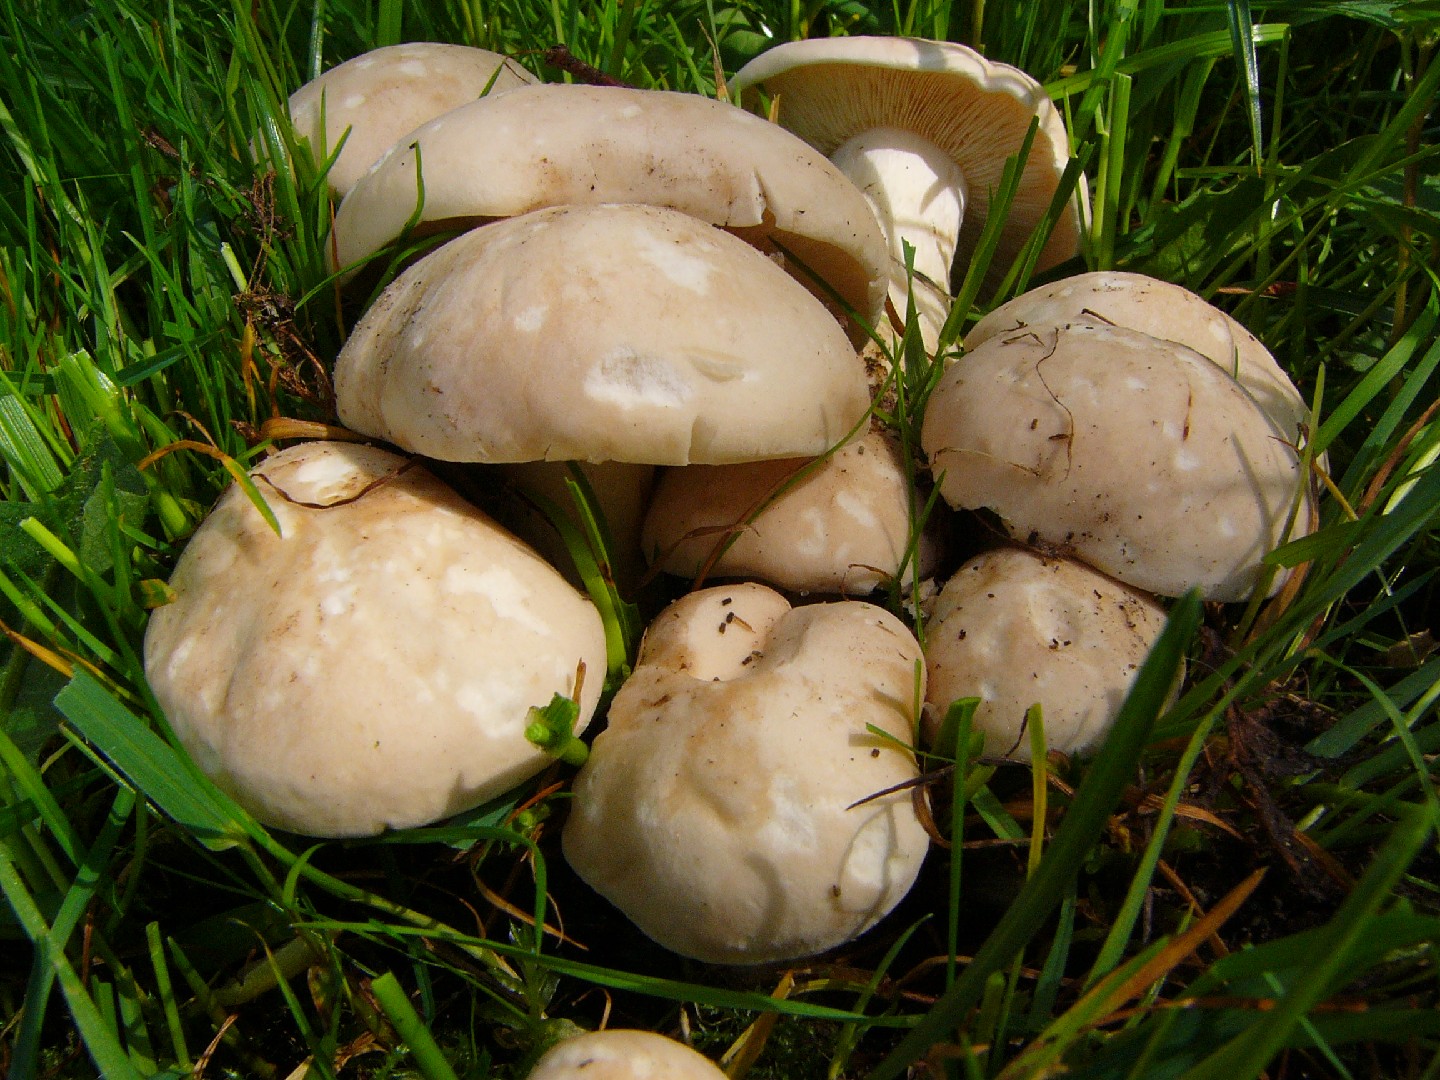 St. George's mushroom (Calocybe gambosa)